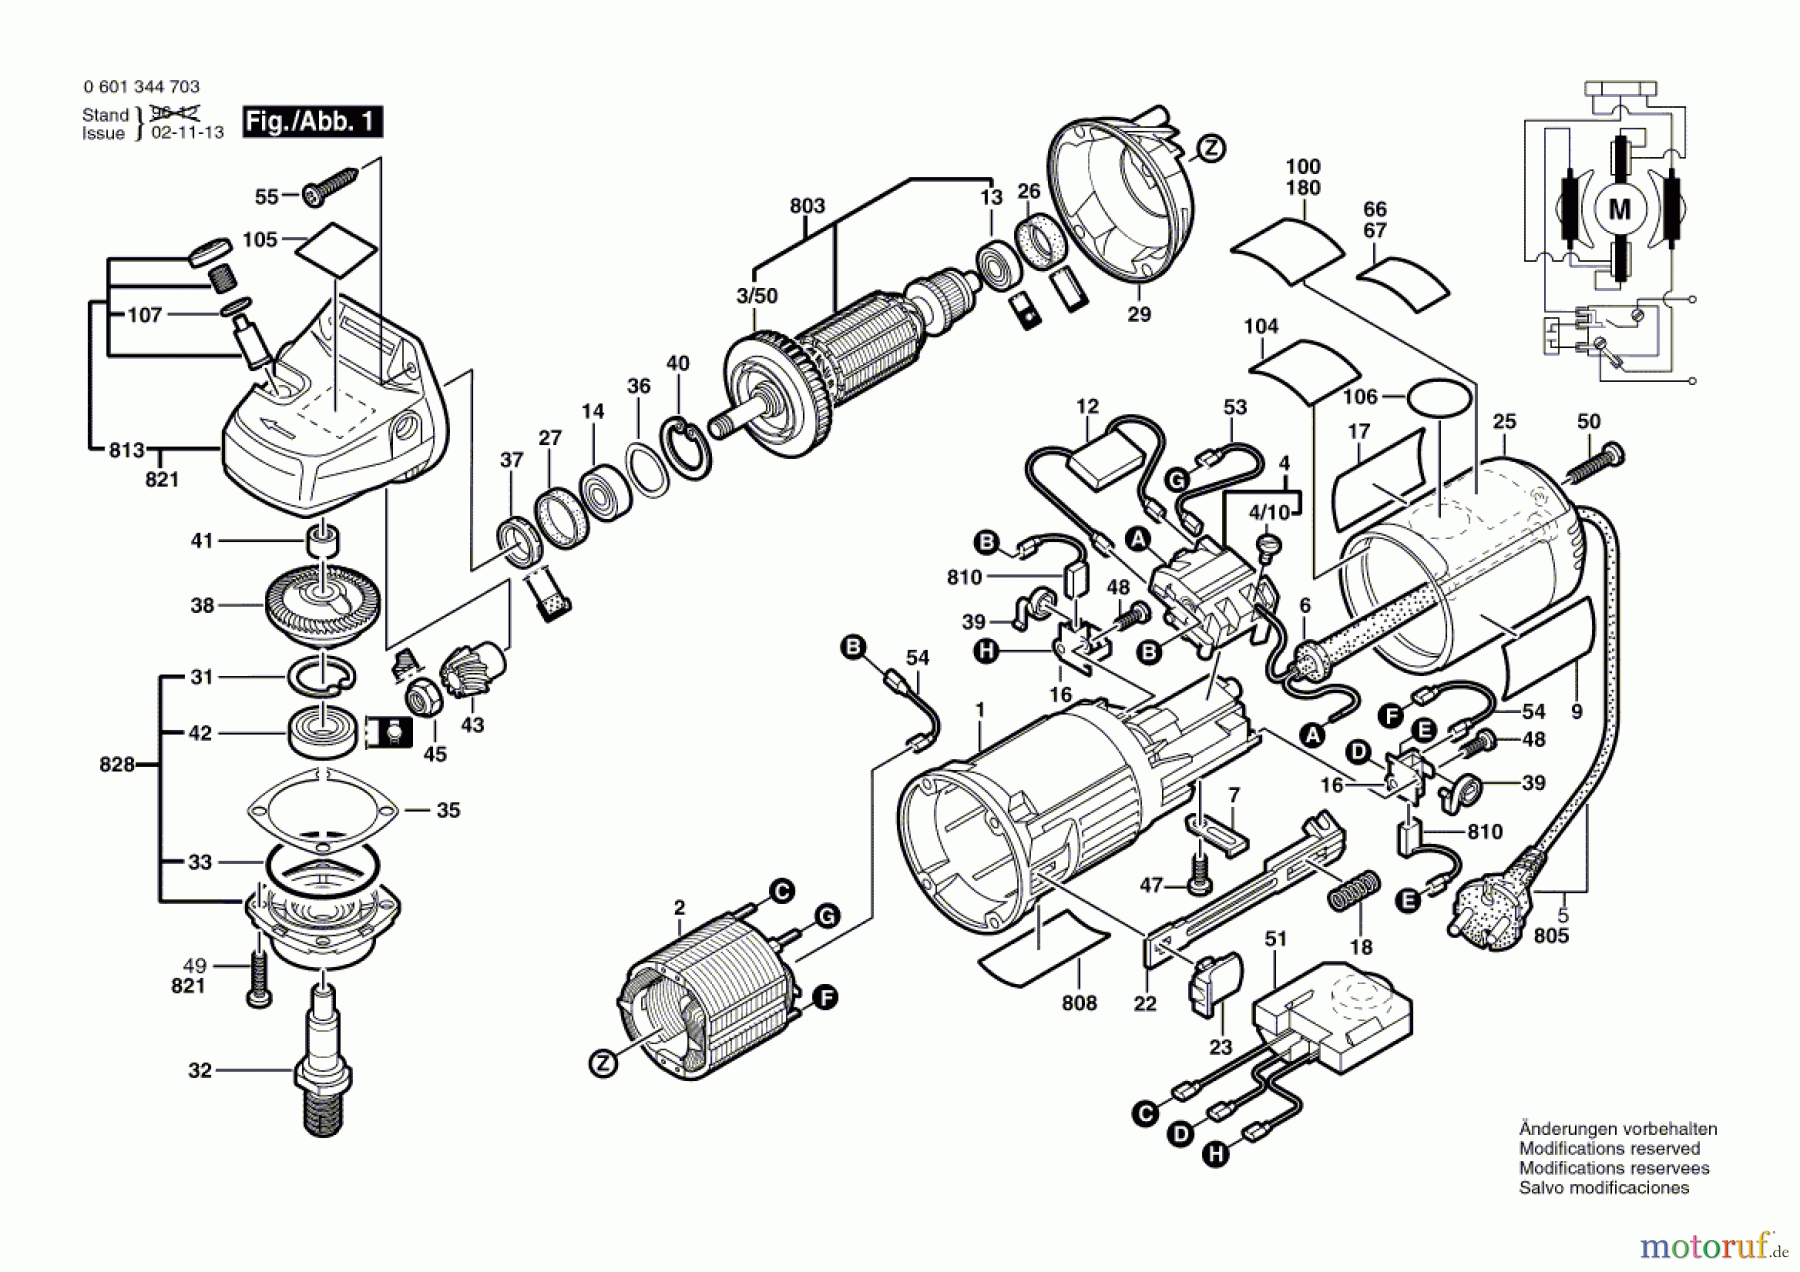  Bosch Werkzeug Winkelschleifer GWS 9-125 CE Seite 1